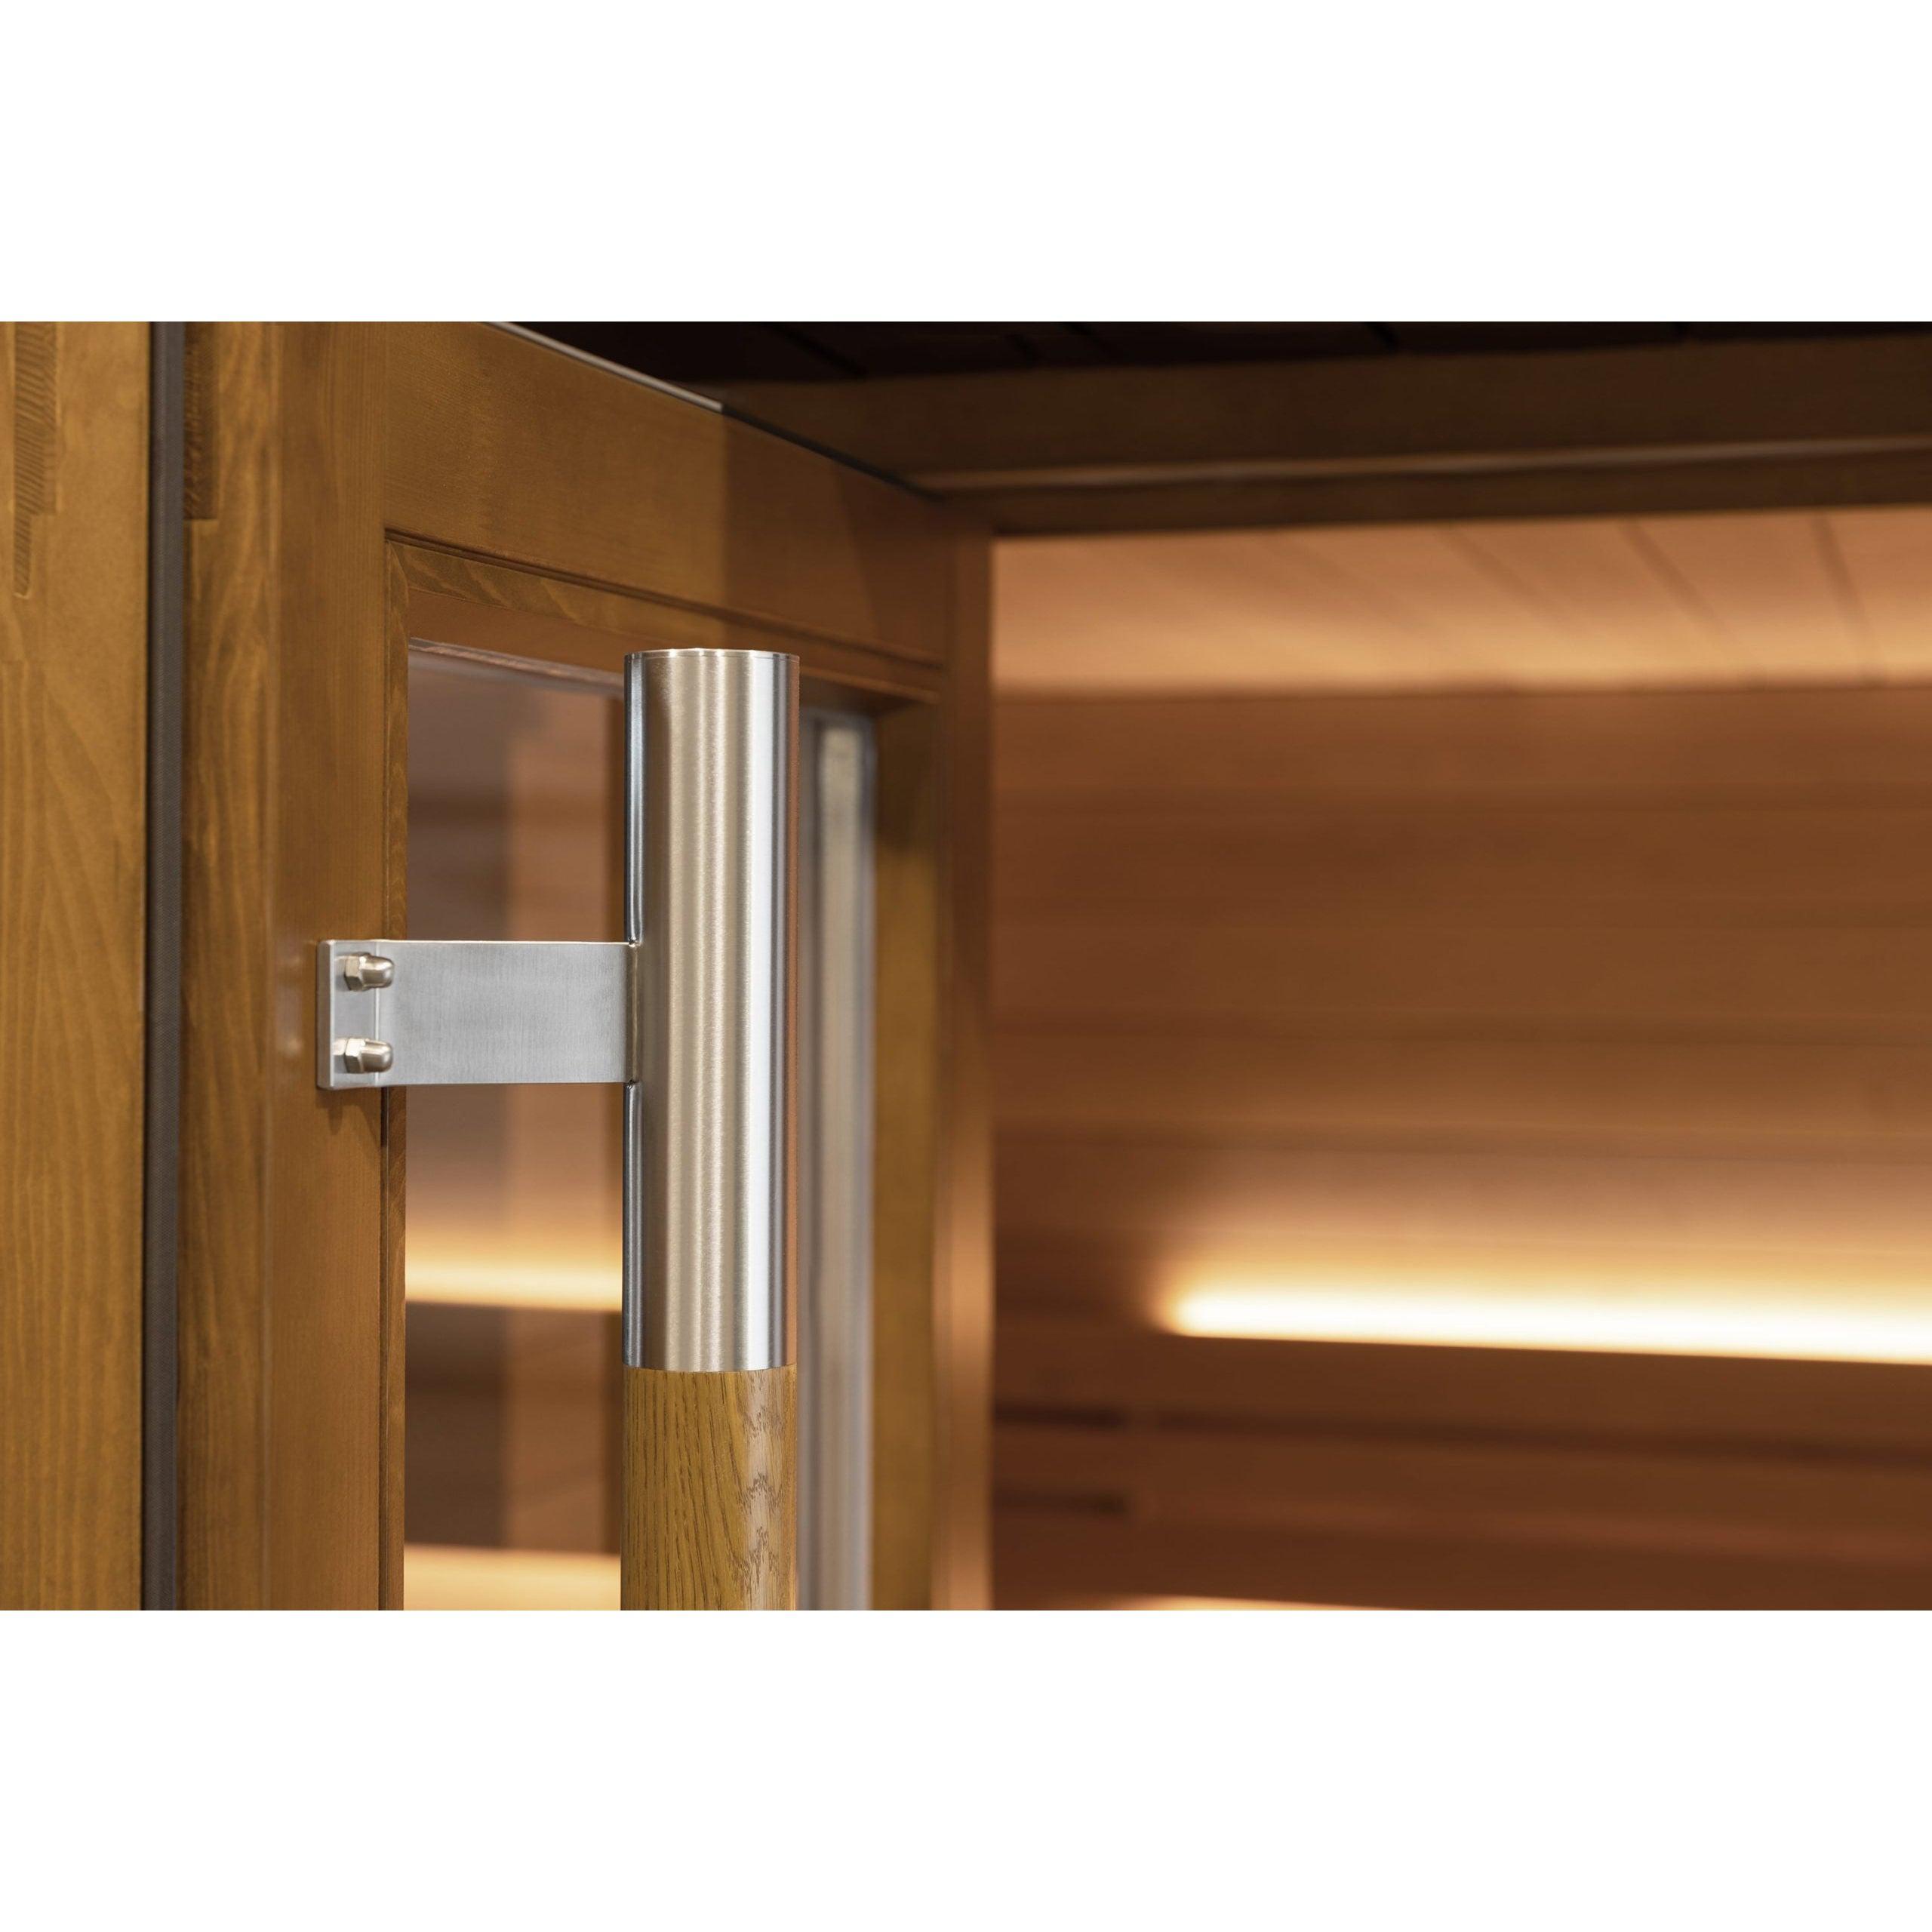 SaunaLife Model G7S Pre-Assembled Outdoor Home Sauna - Left Swing Door - Purely Relaxation